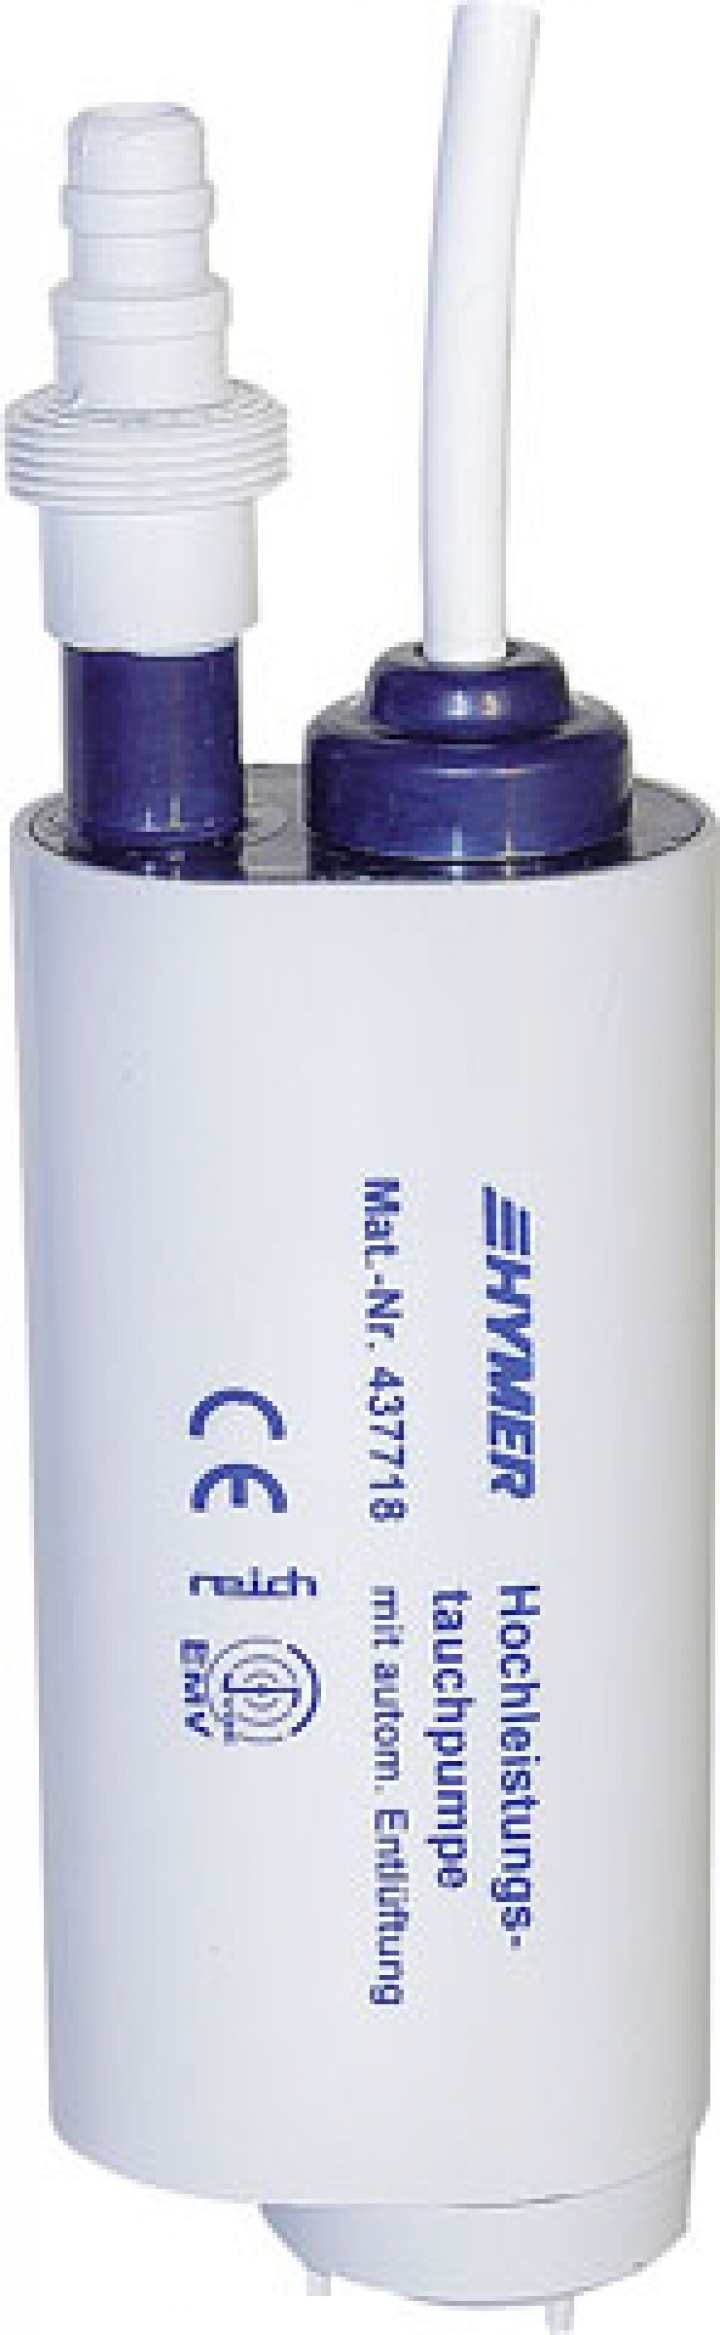 Dränkbar pump Reich 18 l / min, 0,9 bar 2,5 - 3,0 A specialversion Hy i gruppen Beställningsvaror hos Camping 4U (9972200)